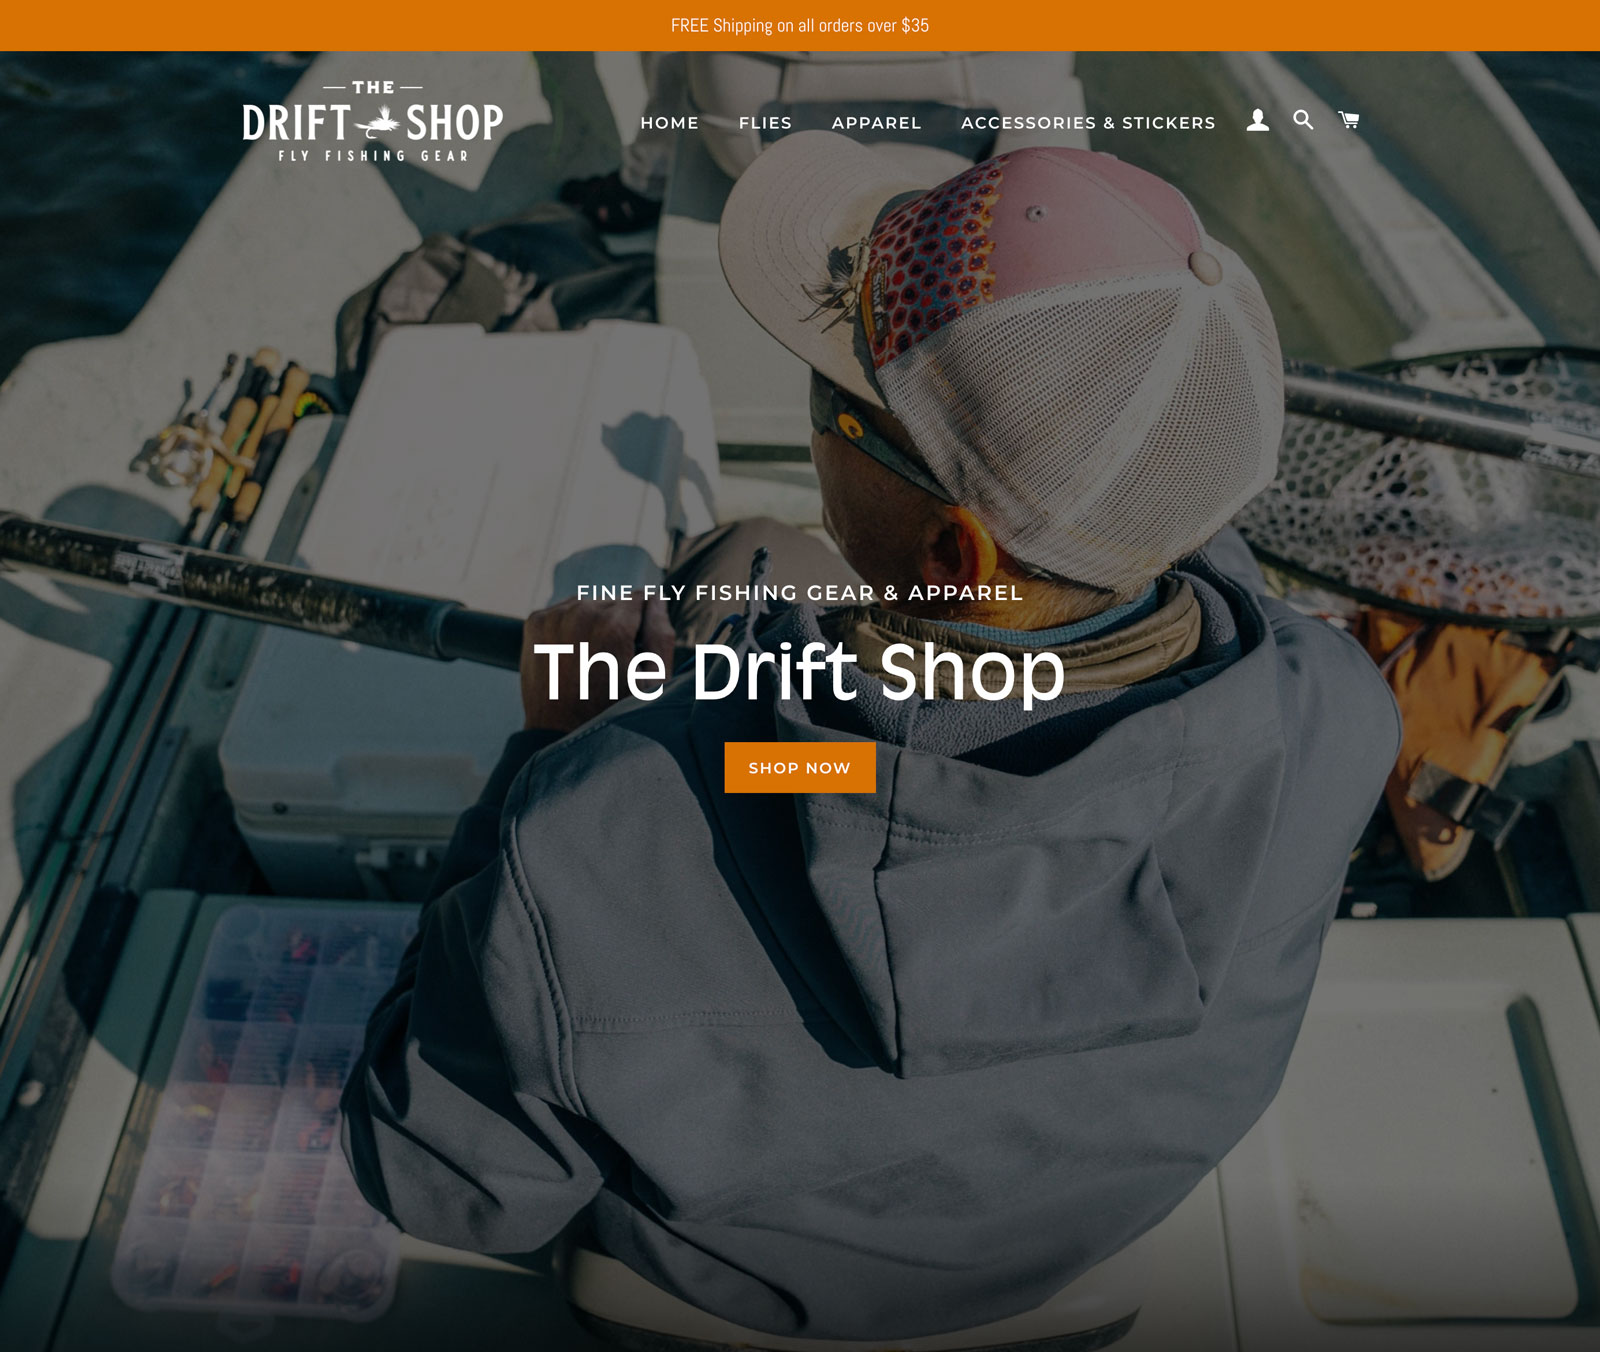 The Drift Shop